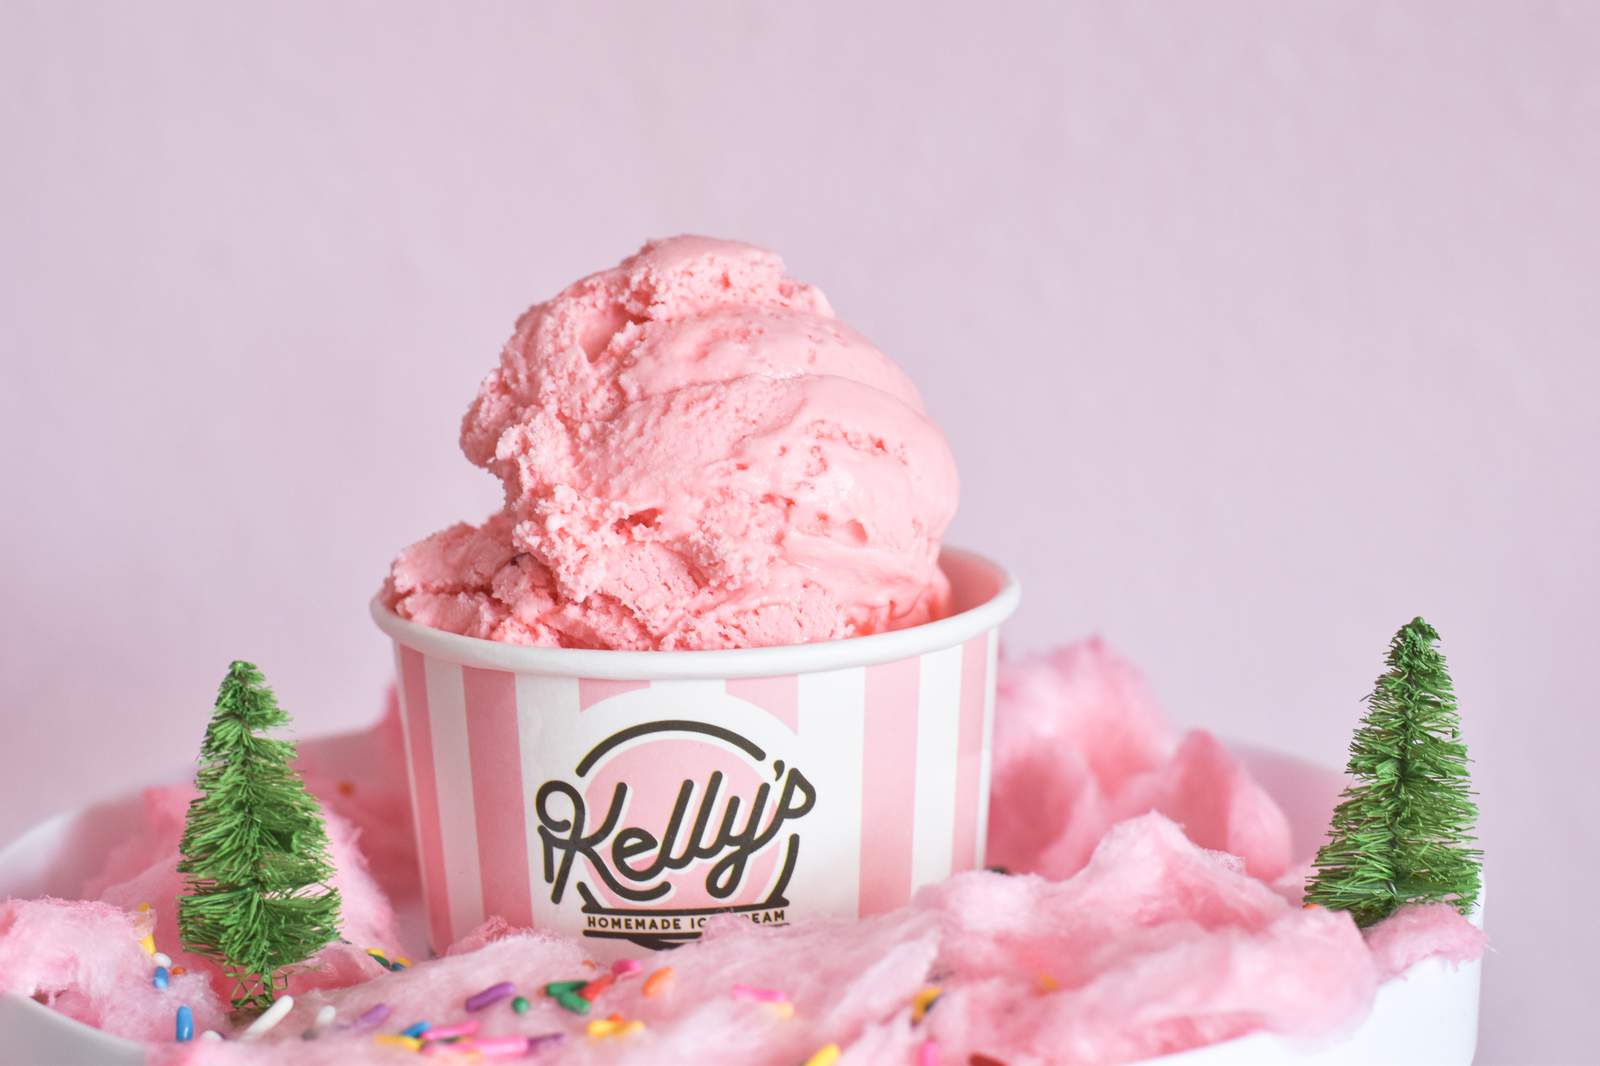 Ho, ho, ho holiday flavors churn up at Kelly’s Homemade Ice Cream